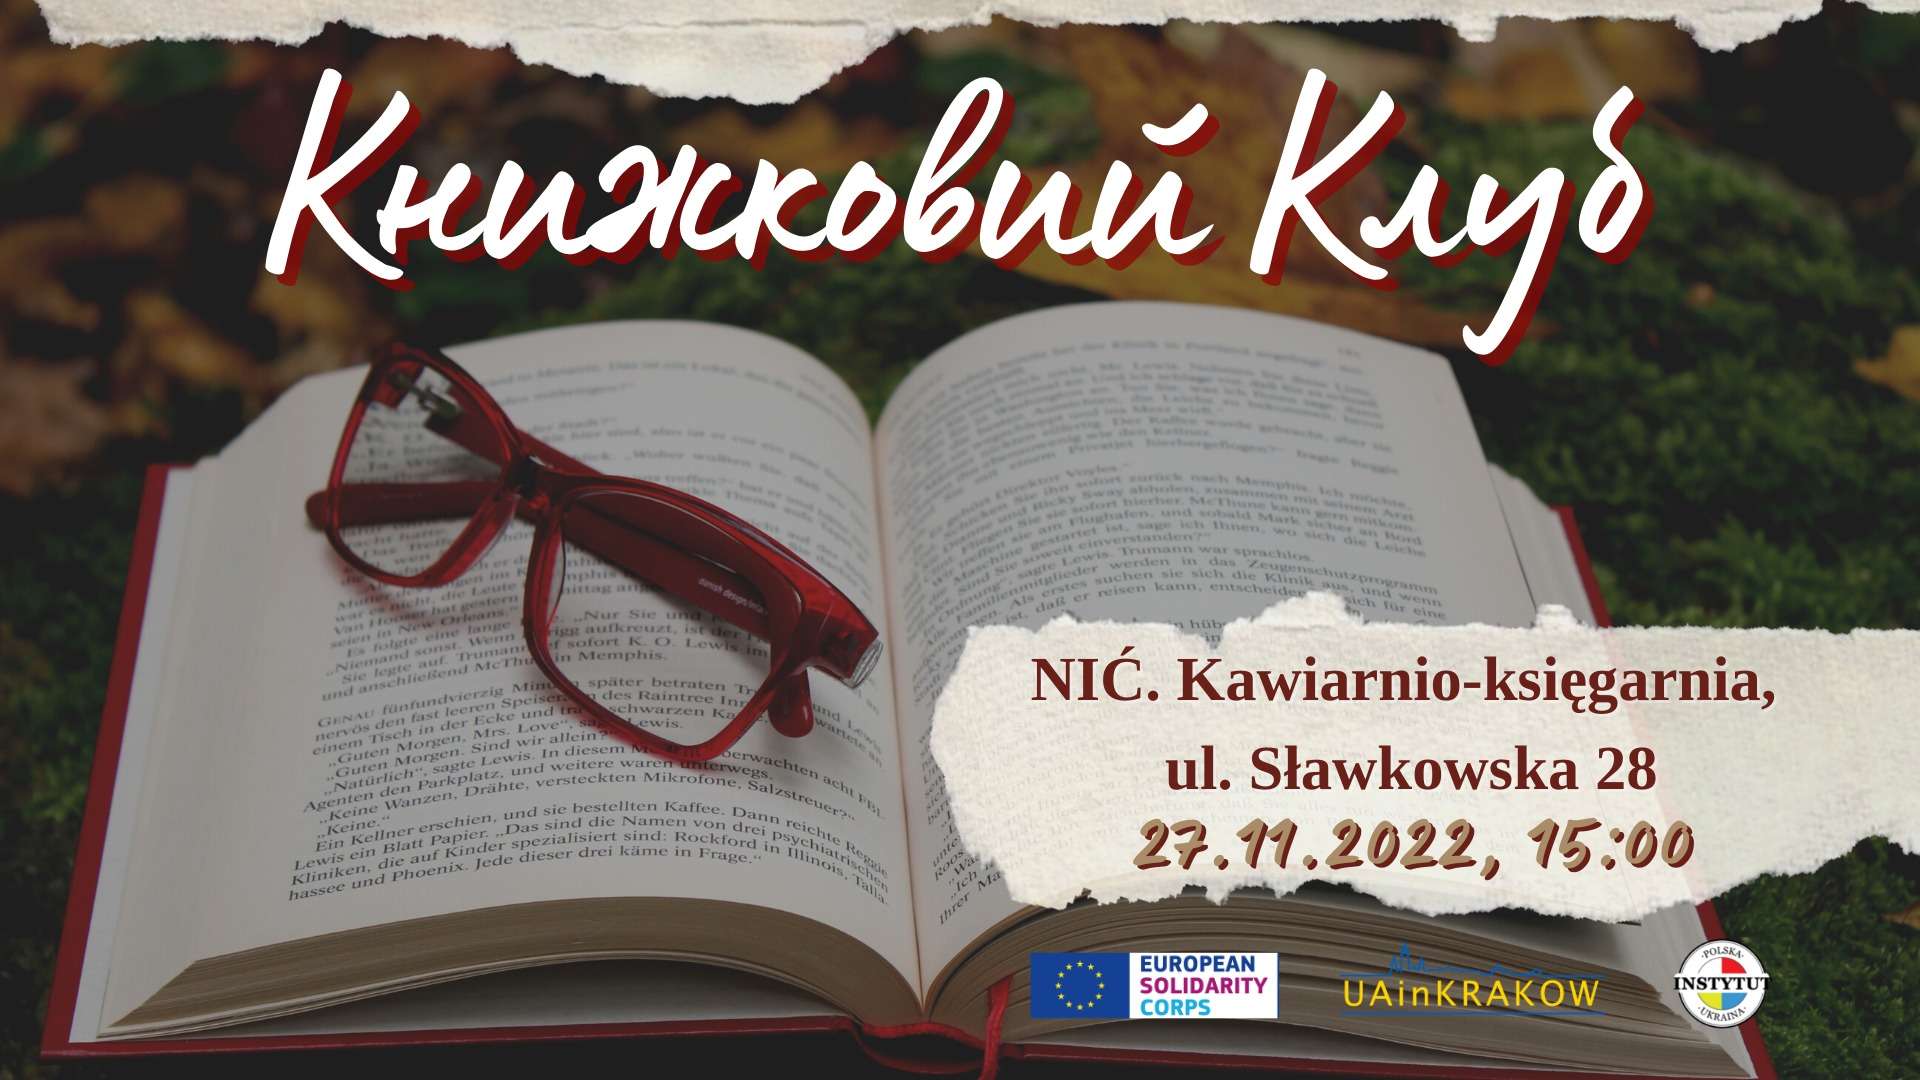 У Кракові відбудеться друга зустріч Книжкового Клубу  N UAinKrakow.pl